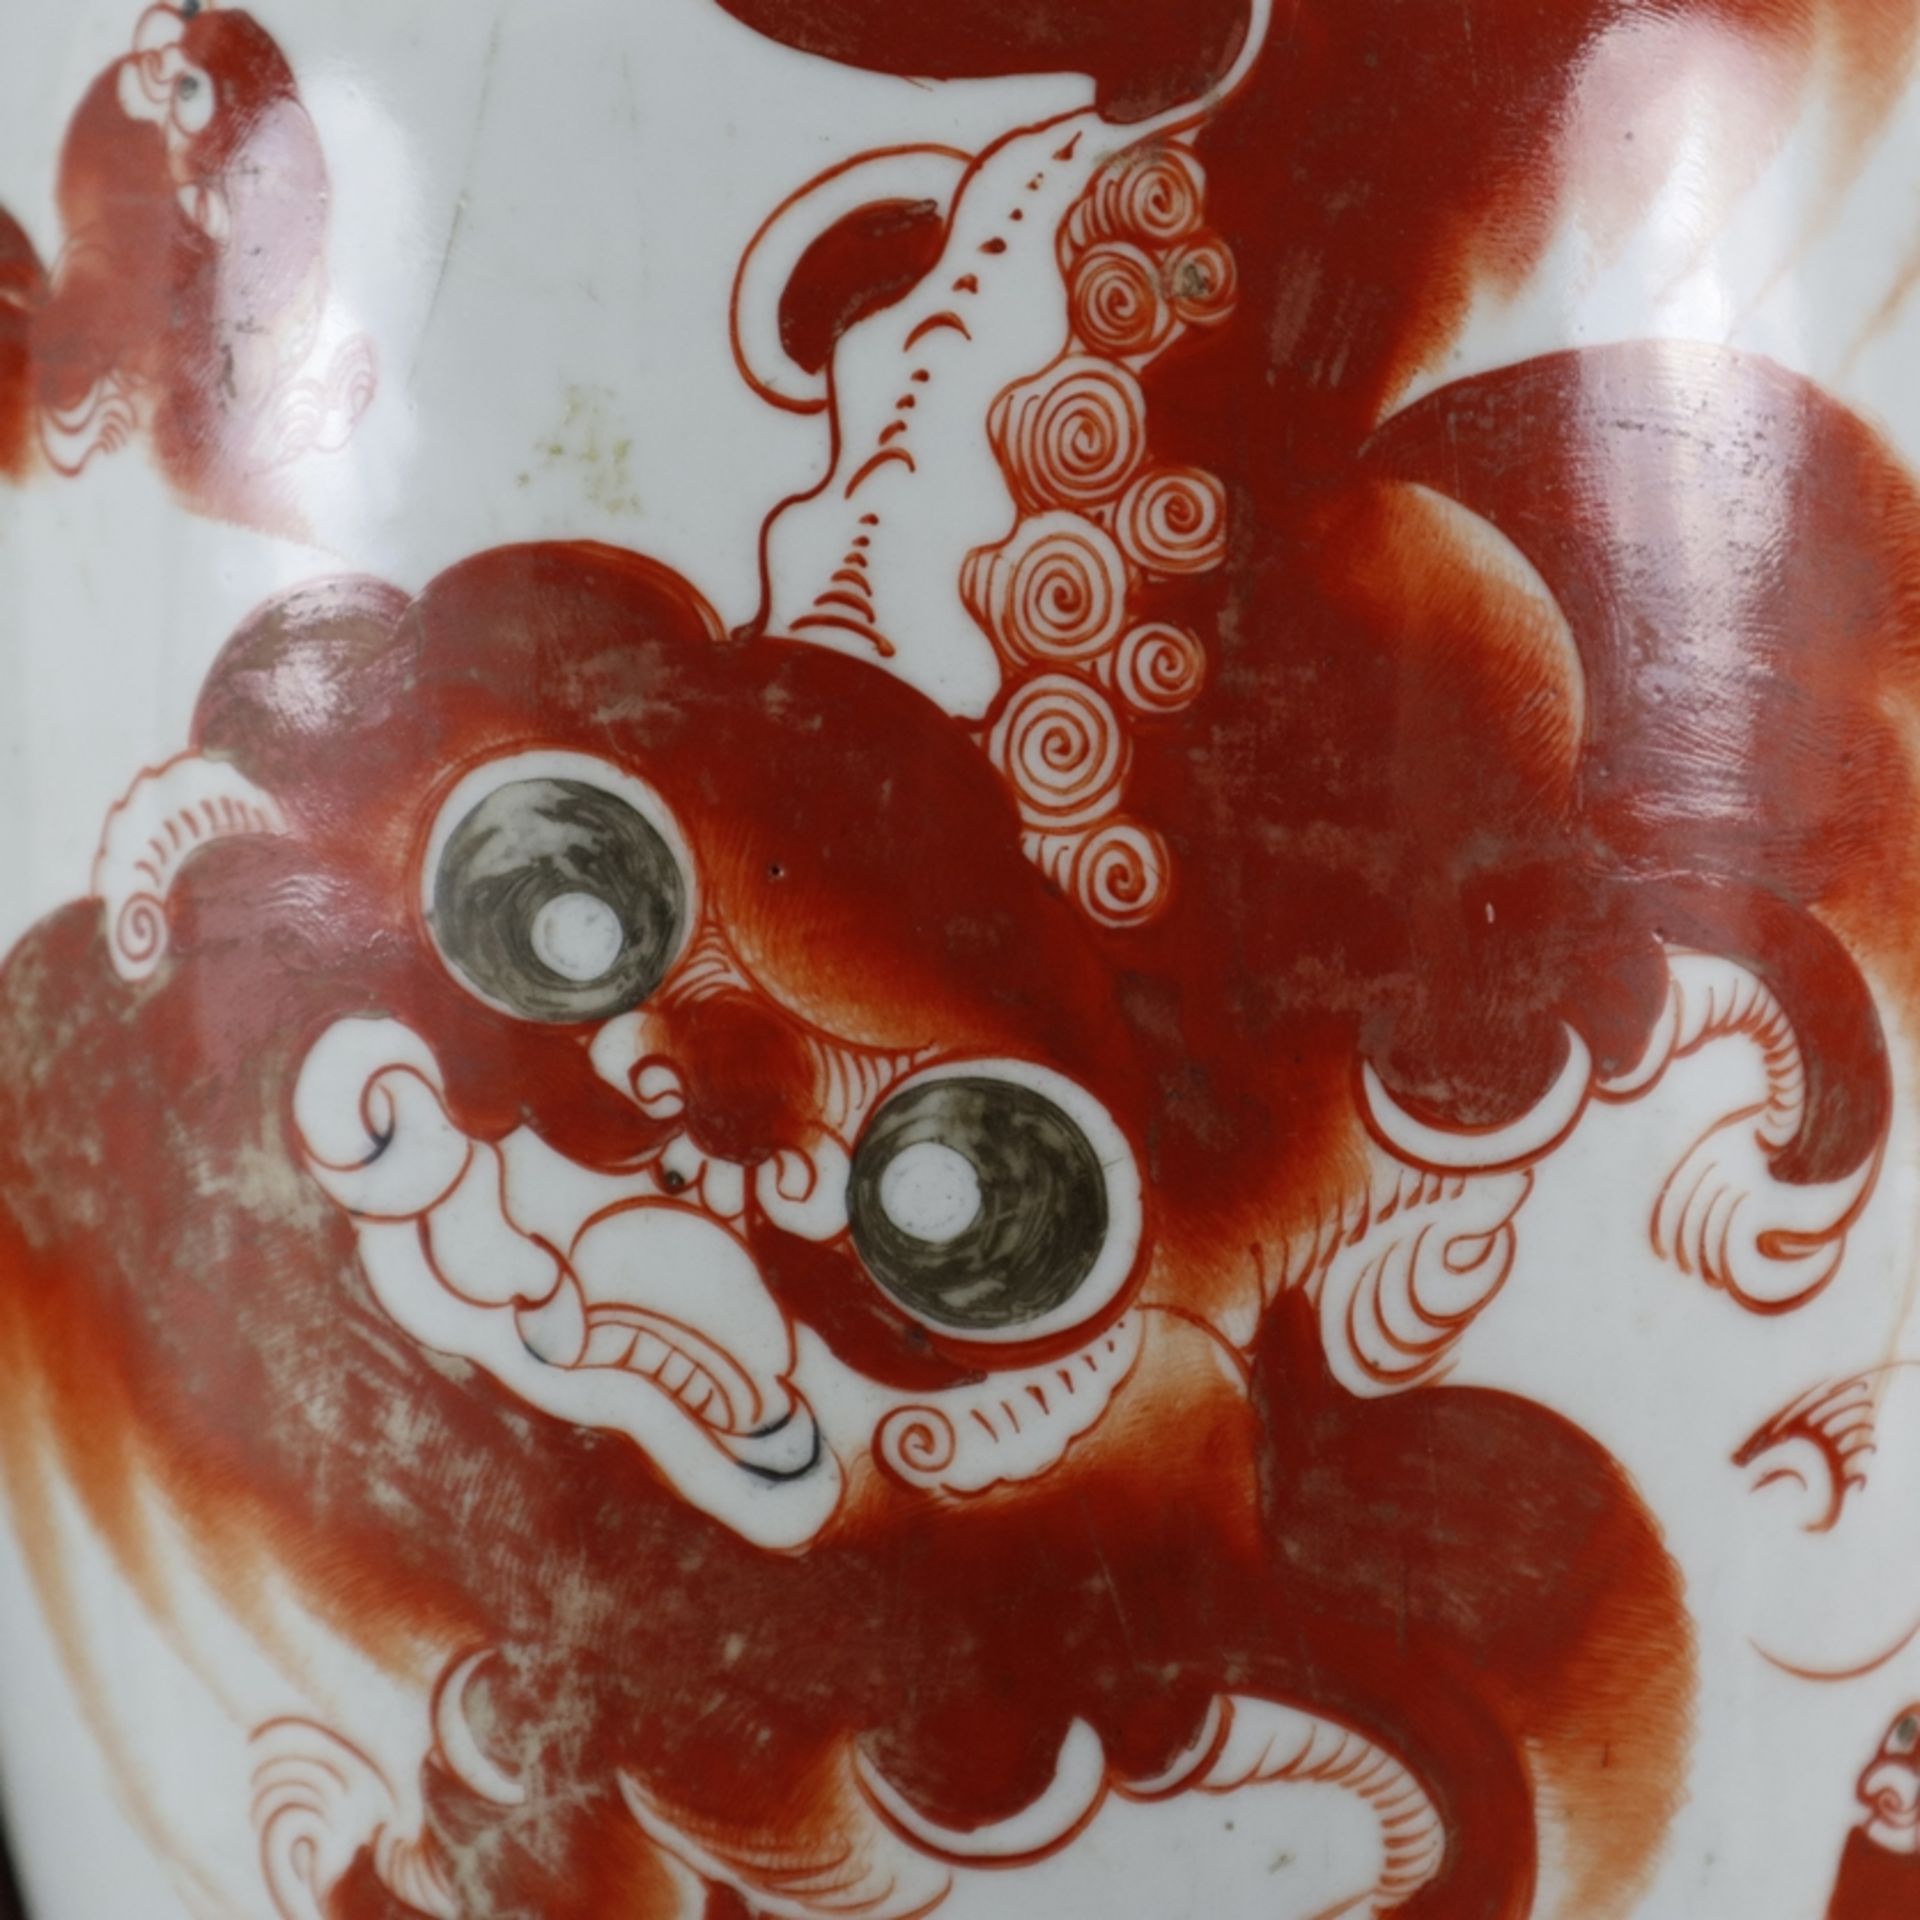 Wanddekoration mit Vase - China, halbe Porzellanvase in Holzrahmung eingelassen, Vase bemalt mit Sh - Bild 3 aus 6